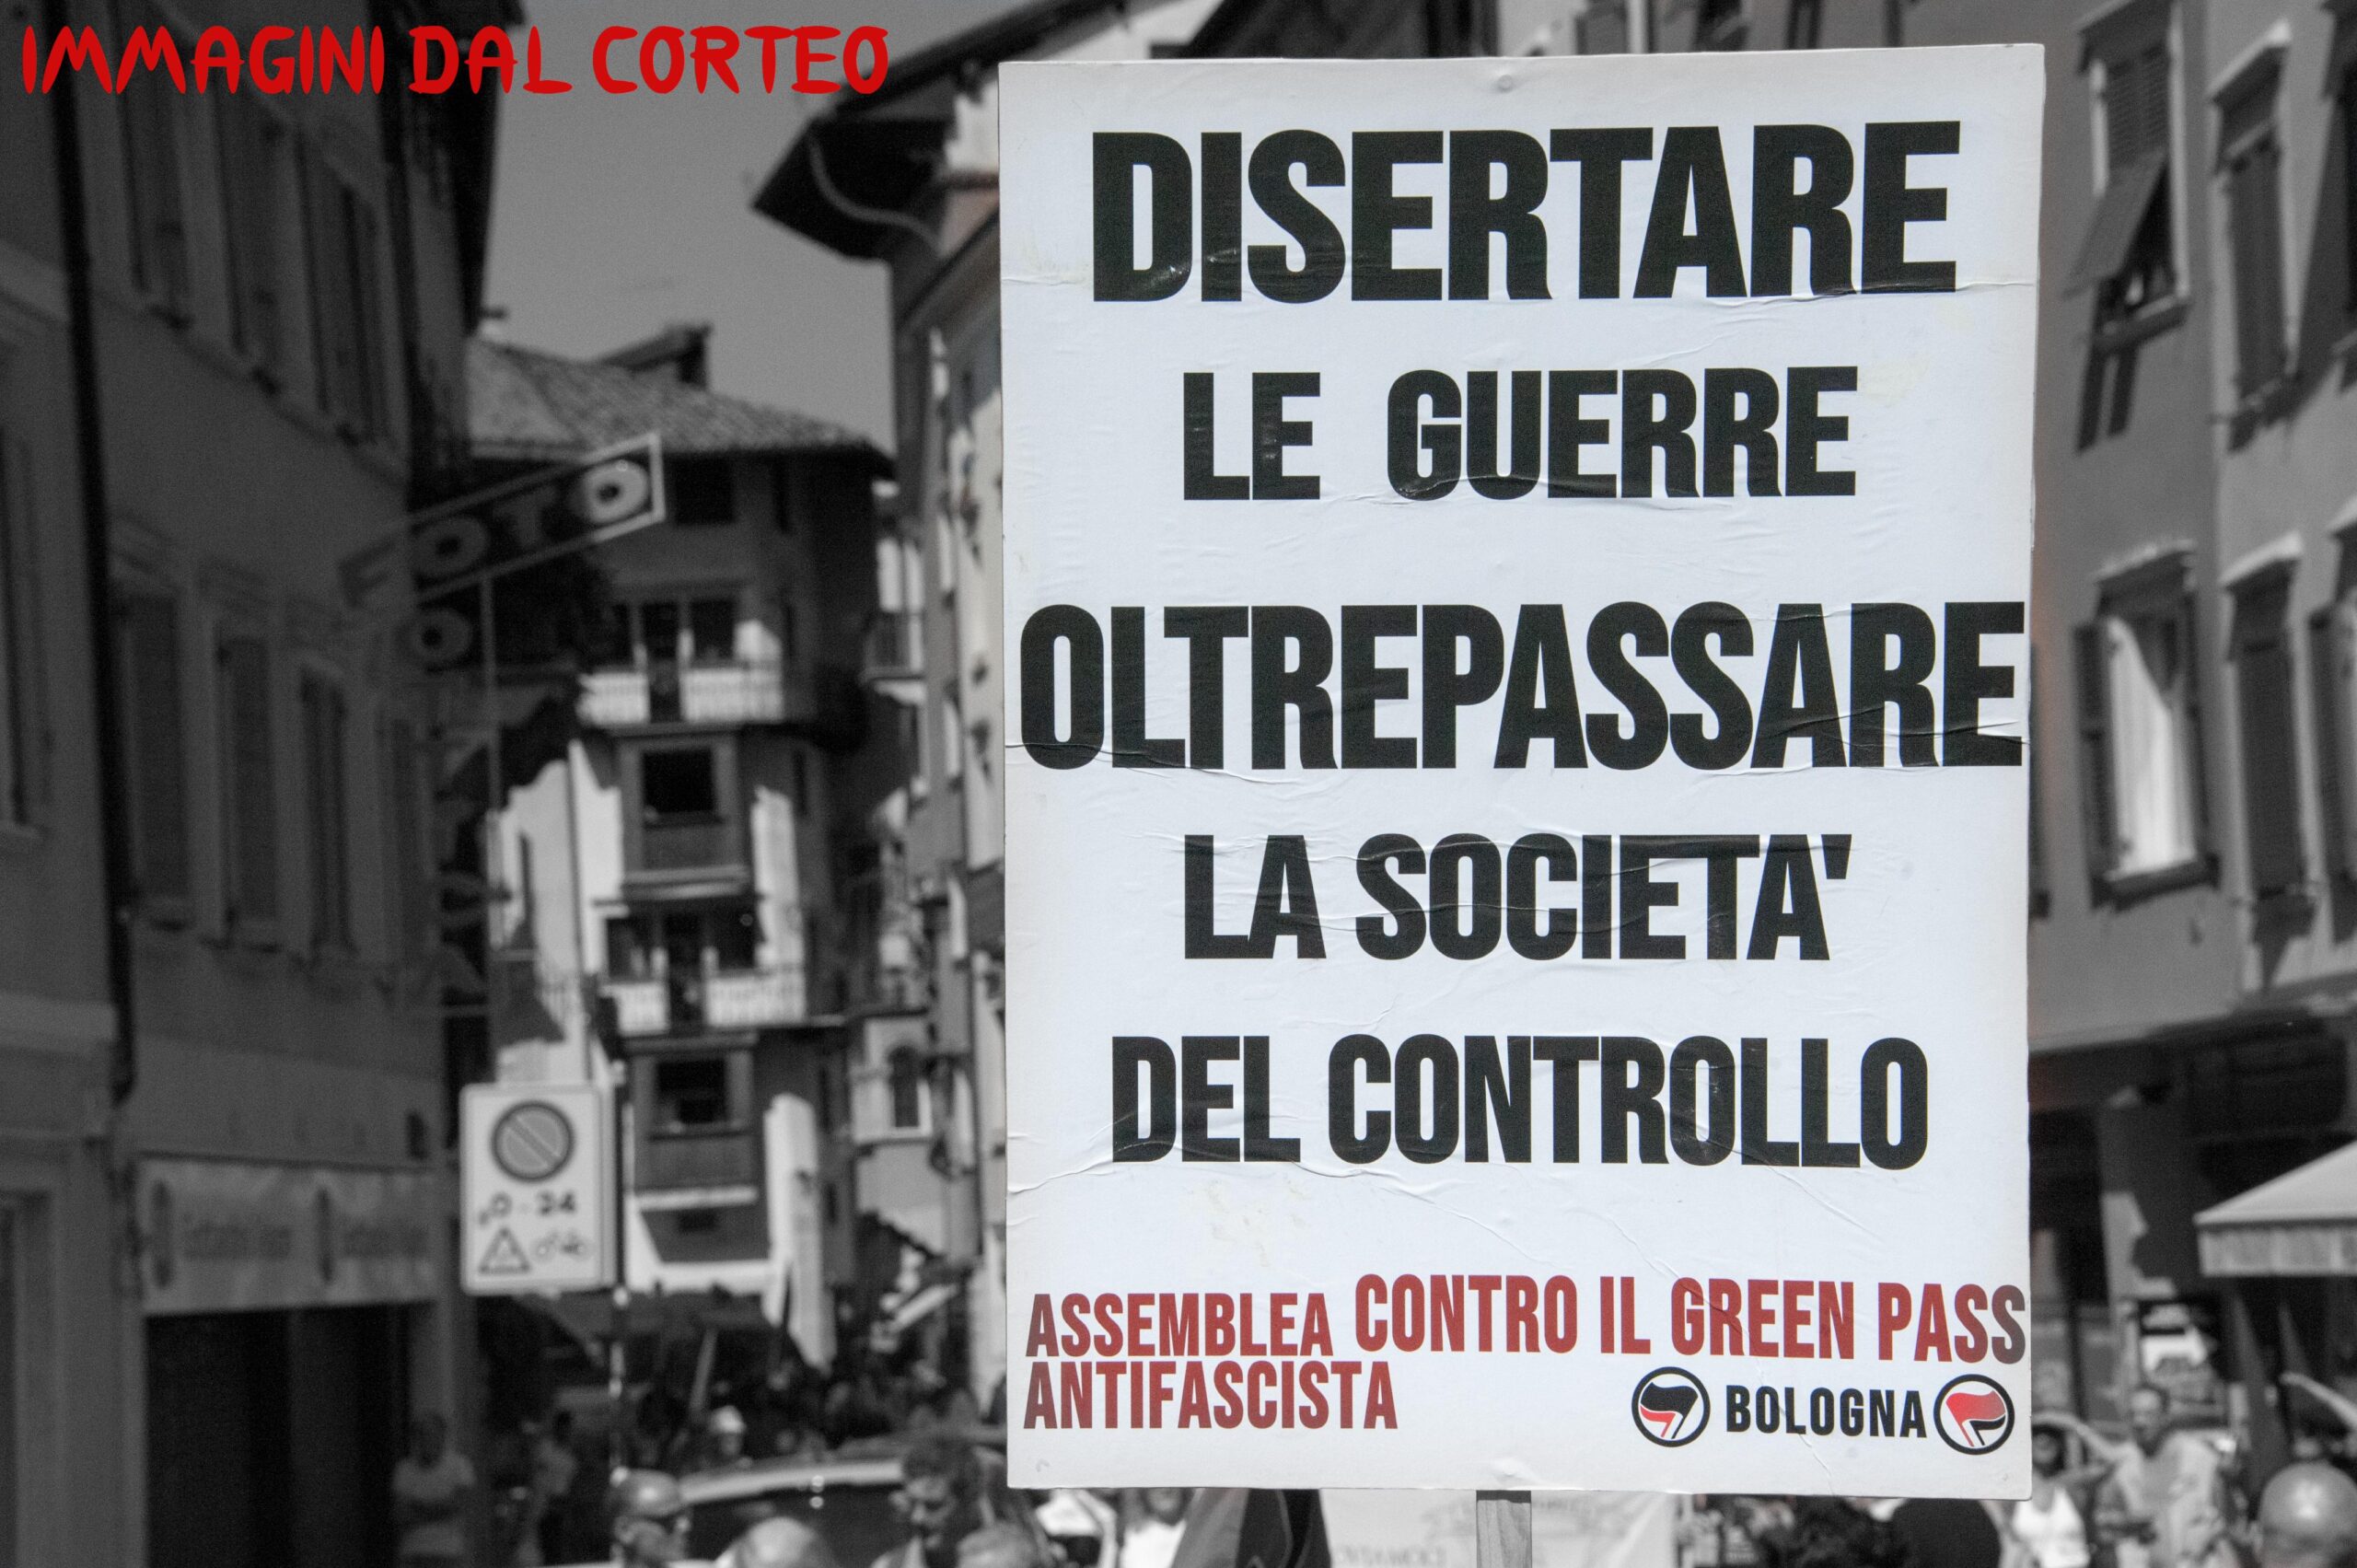 Assemblea antifascista contro il gp di bologna-immagini del corteo